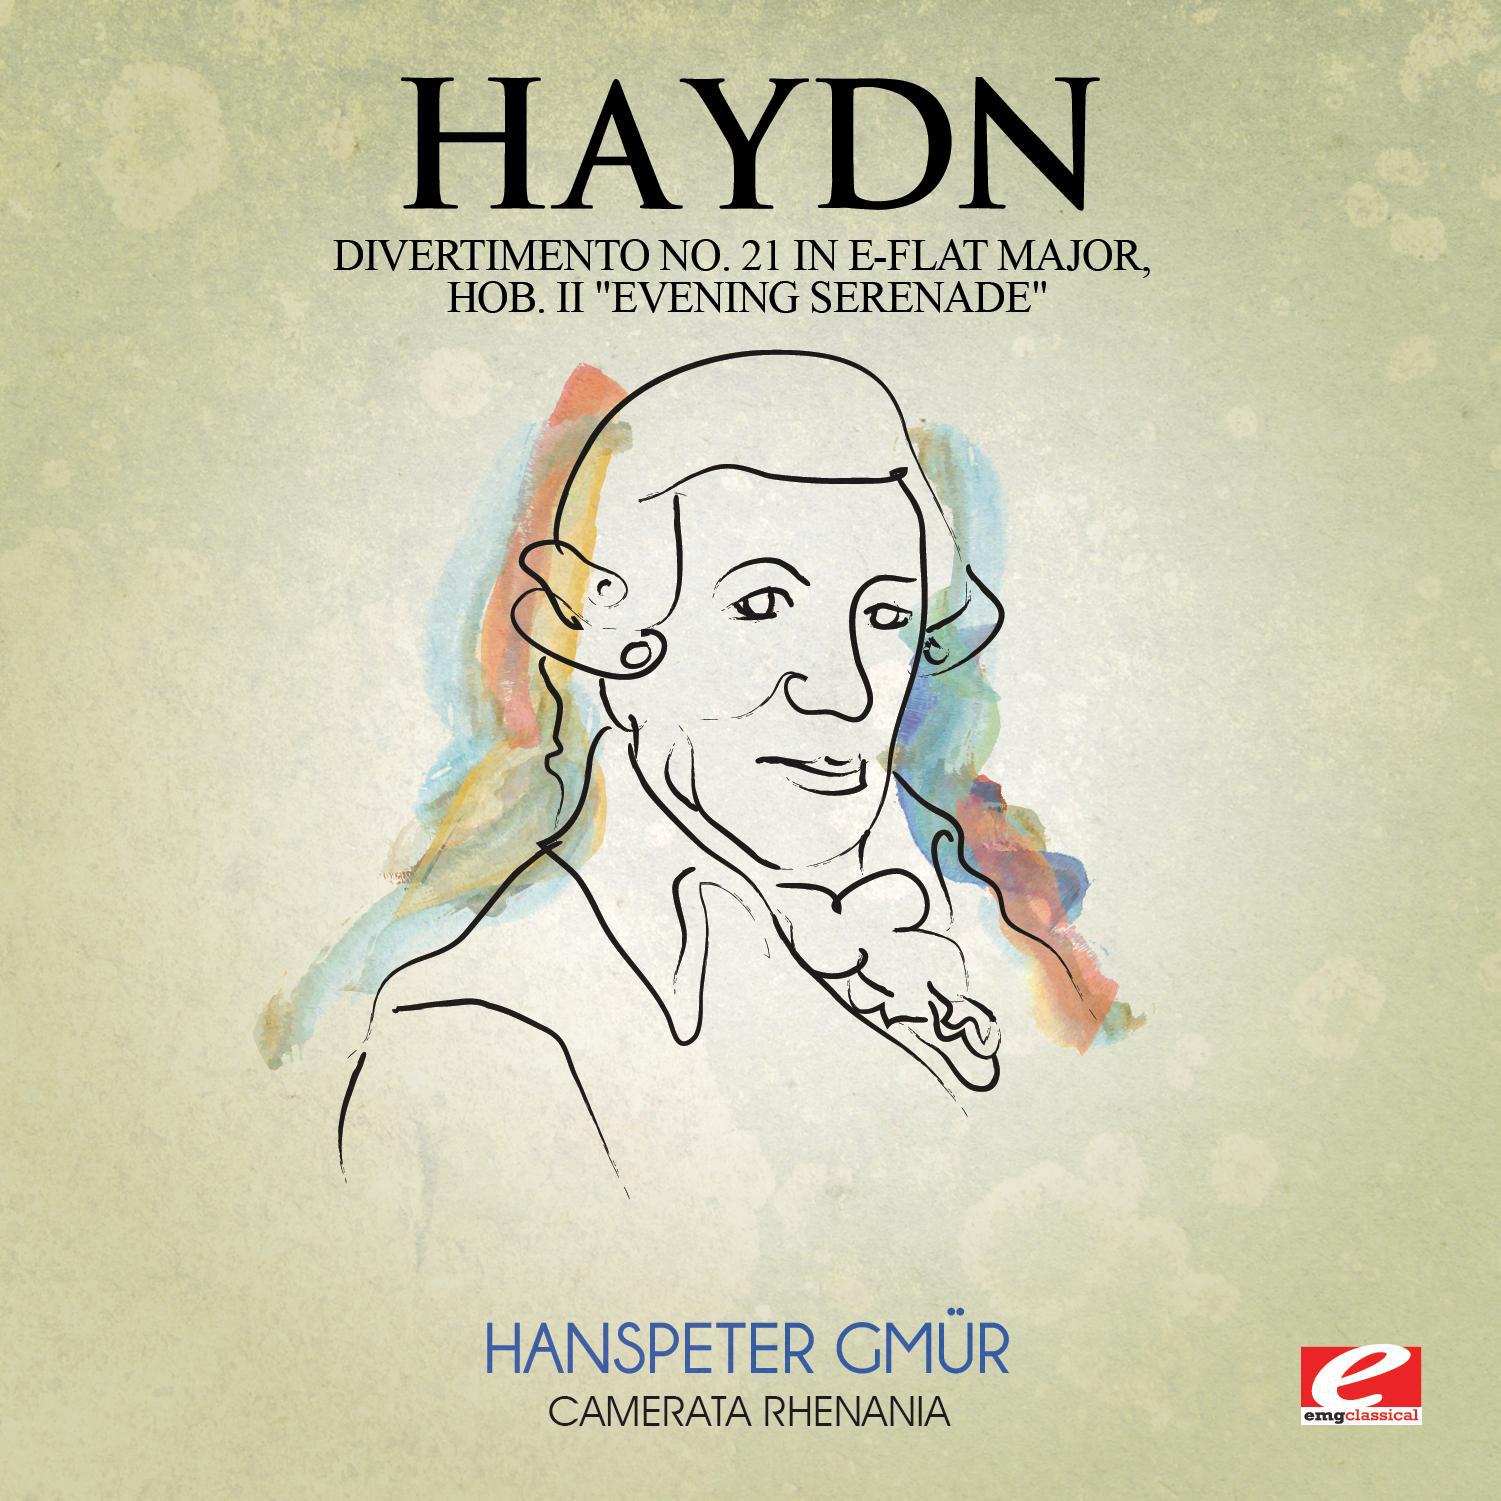 Haydn: Divertimento No. 21 in E-Flat Major, Hob. II "Evening Serenade" (Digitally Remastered)